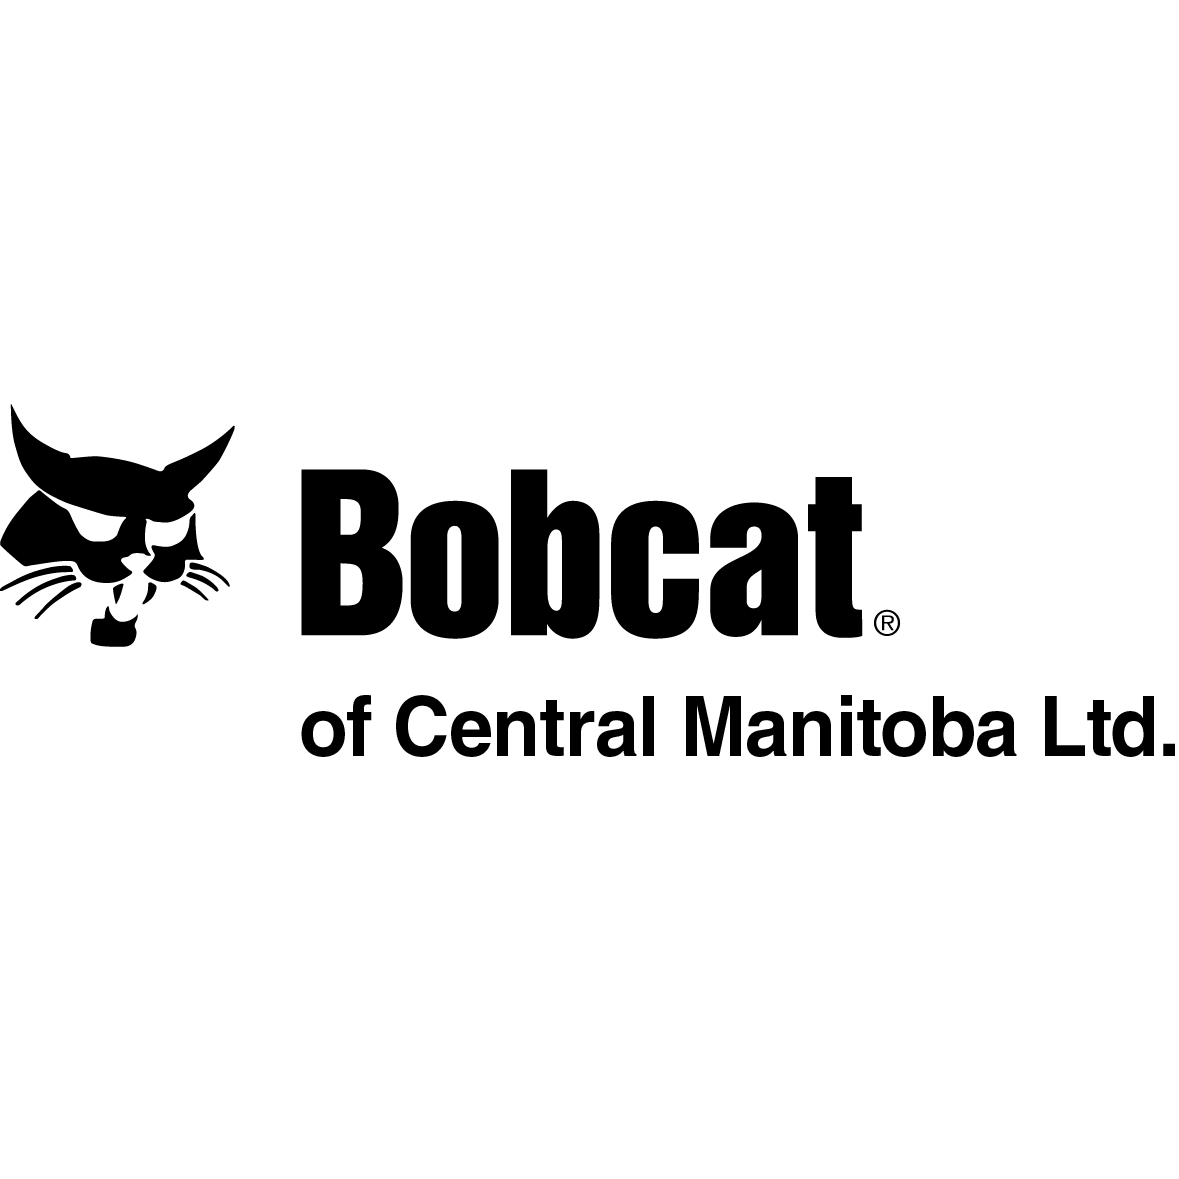 Bobcat of Central Manitoba